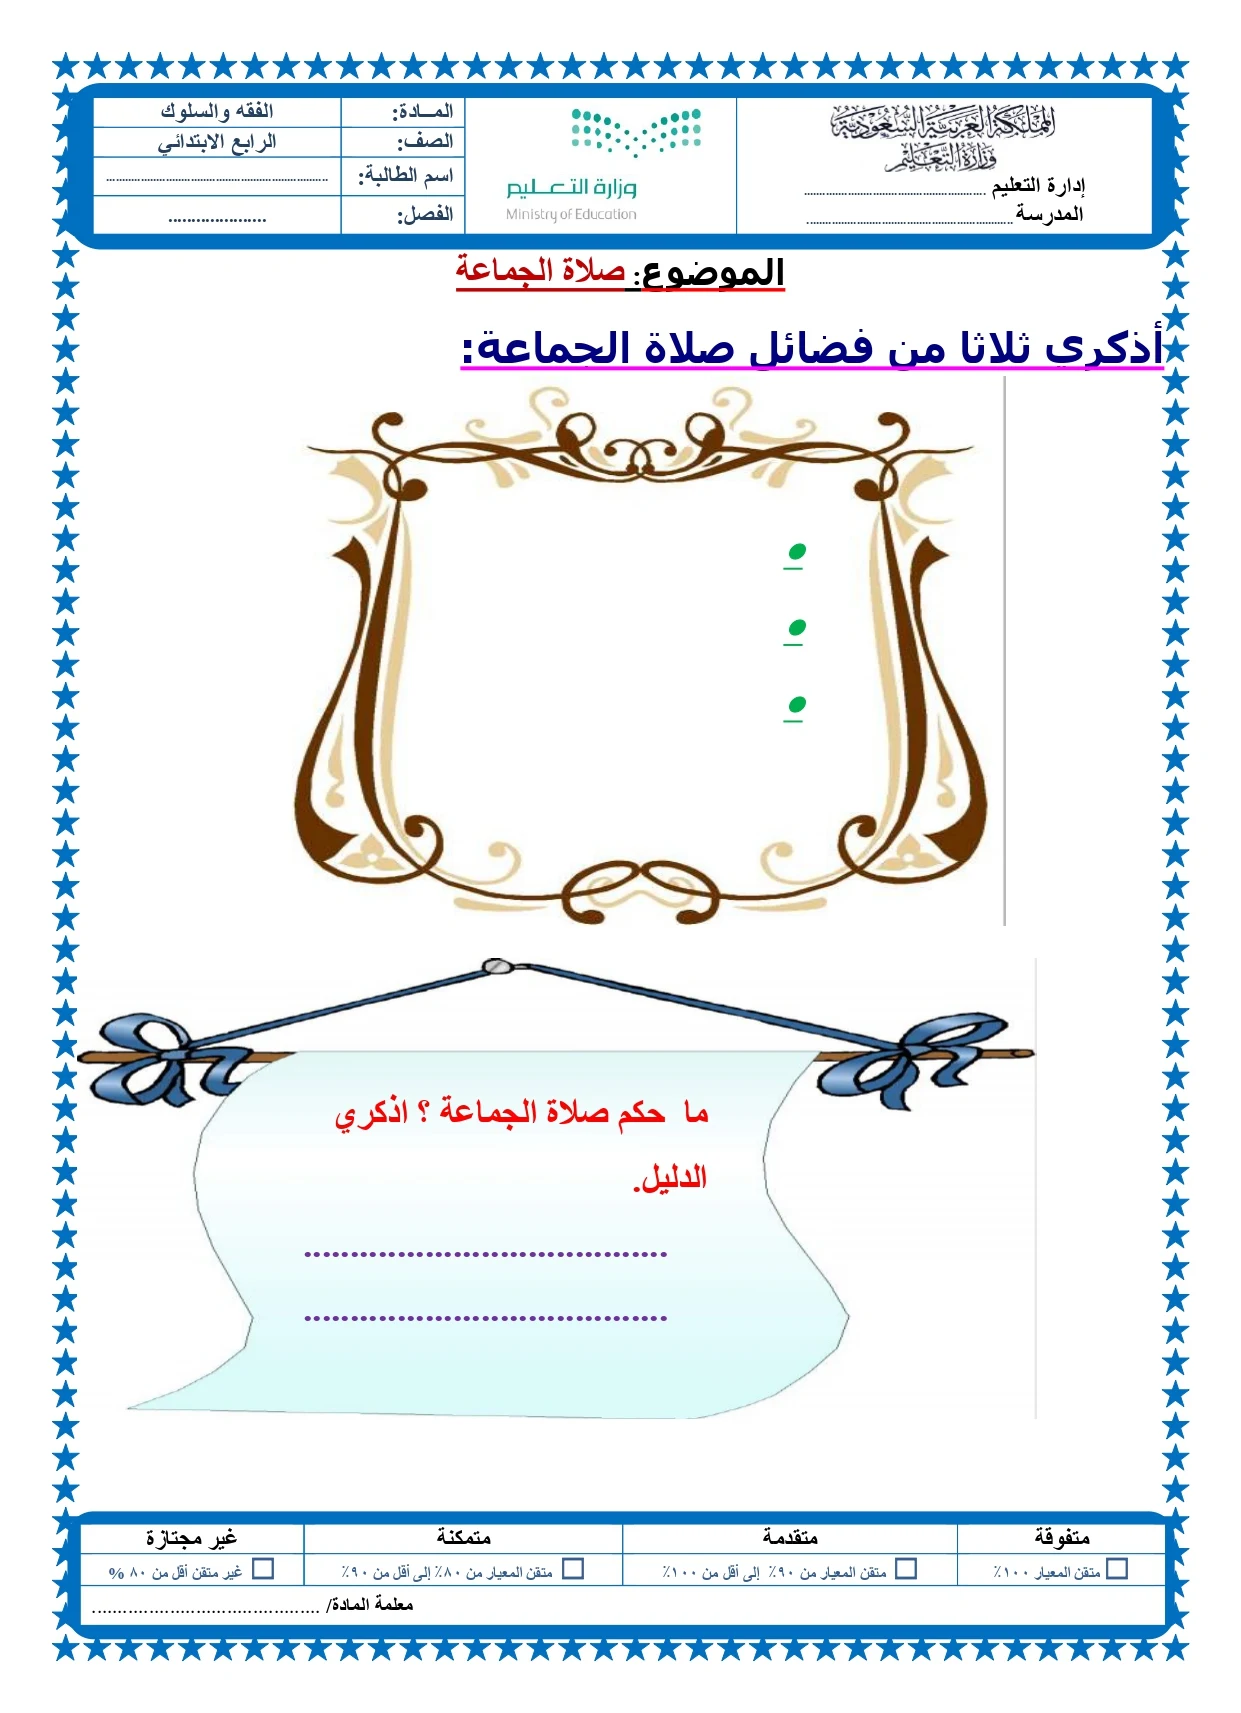 أوراق عمل لمادة التربية الإسلامية الصف الرابع الابتدائي الفصل الدراسي الثالث pdf تحميل مباشر مجاني